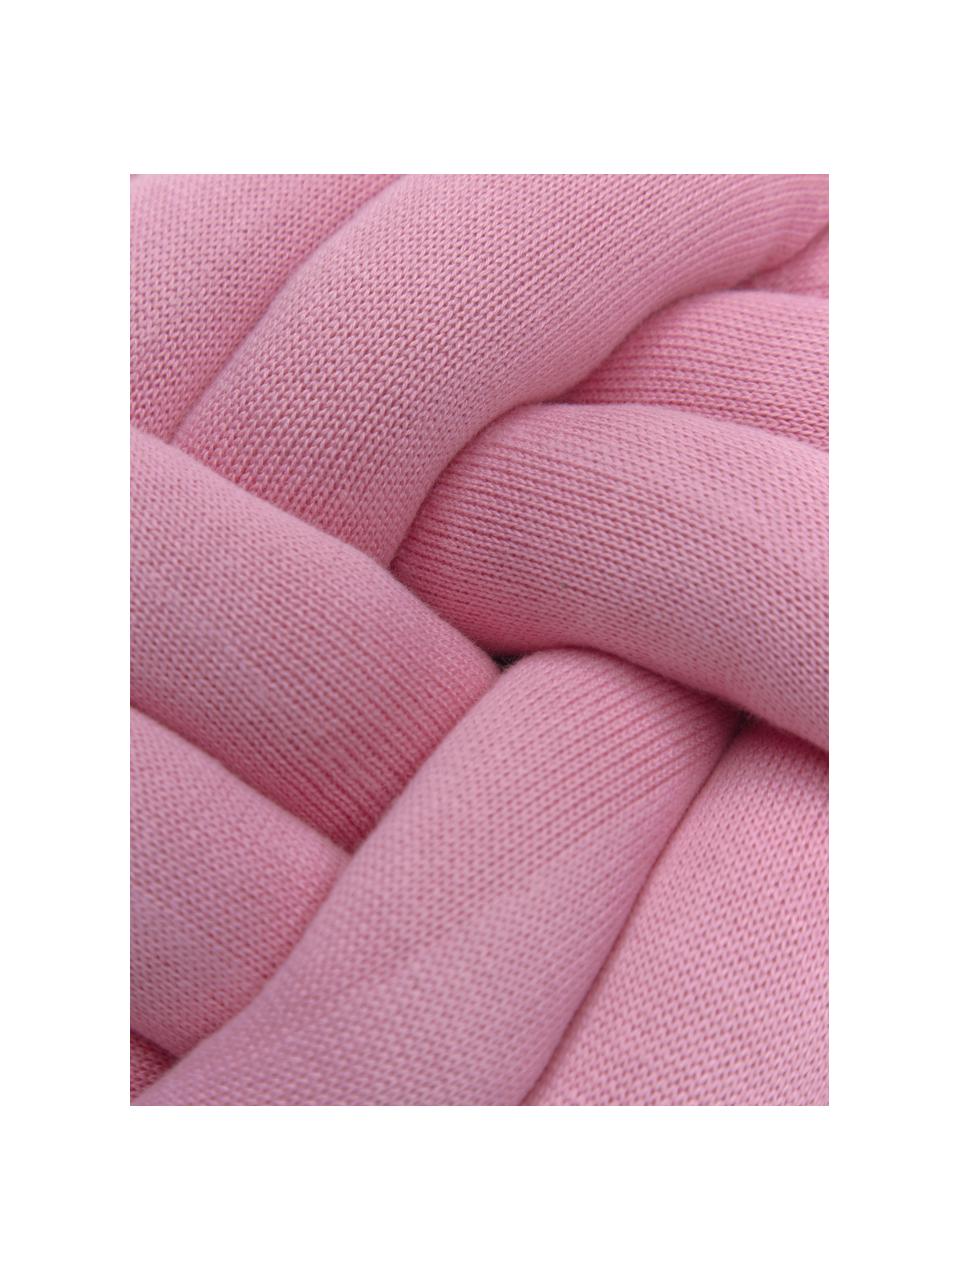 Knoten-Kissen Twist in Pink, Pink, Ø 30 cm